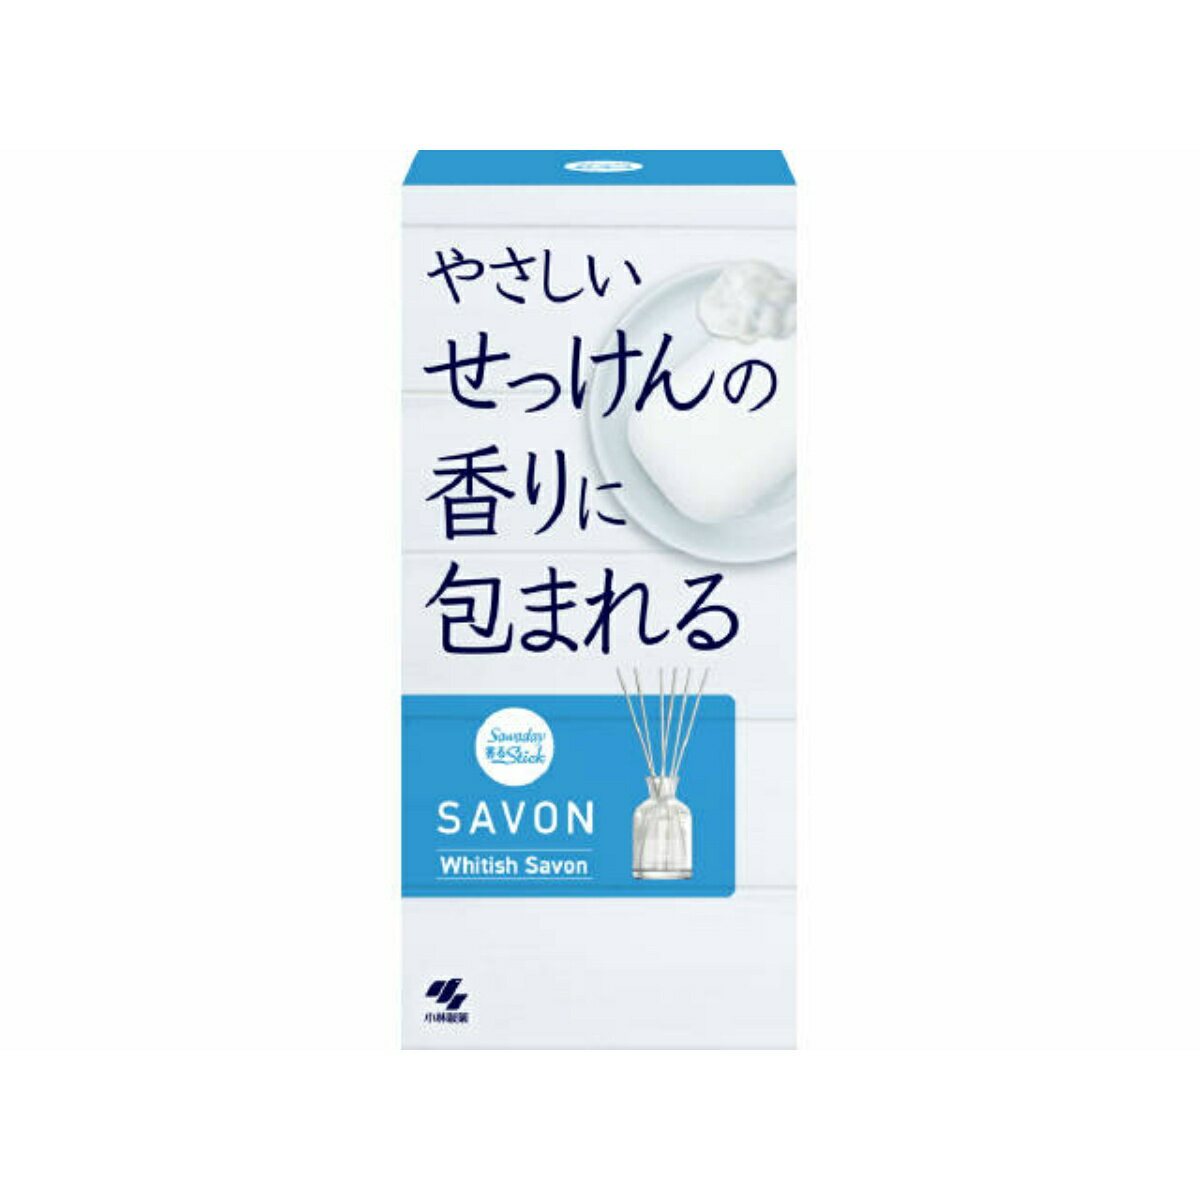 小林製薬 SAWADAY サワデー 香るSTICK SAVON WHITISH SAVON 70ml 芳香剤の写真